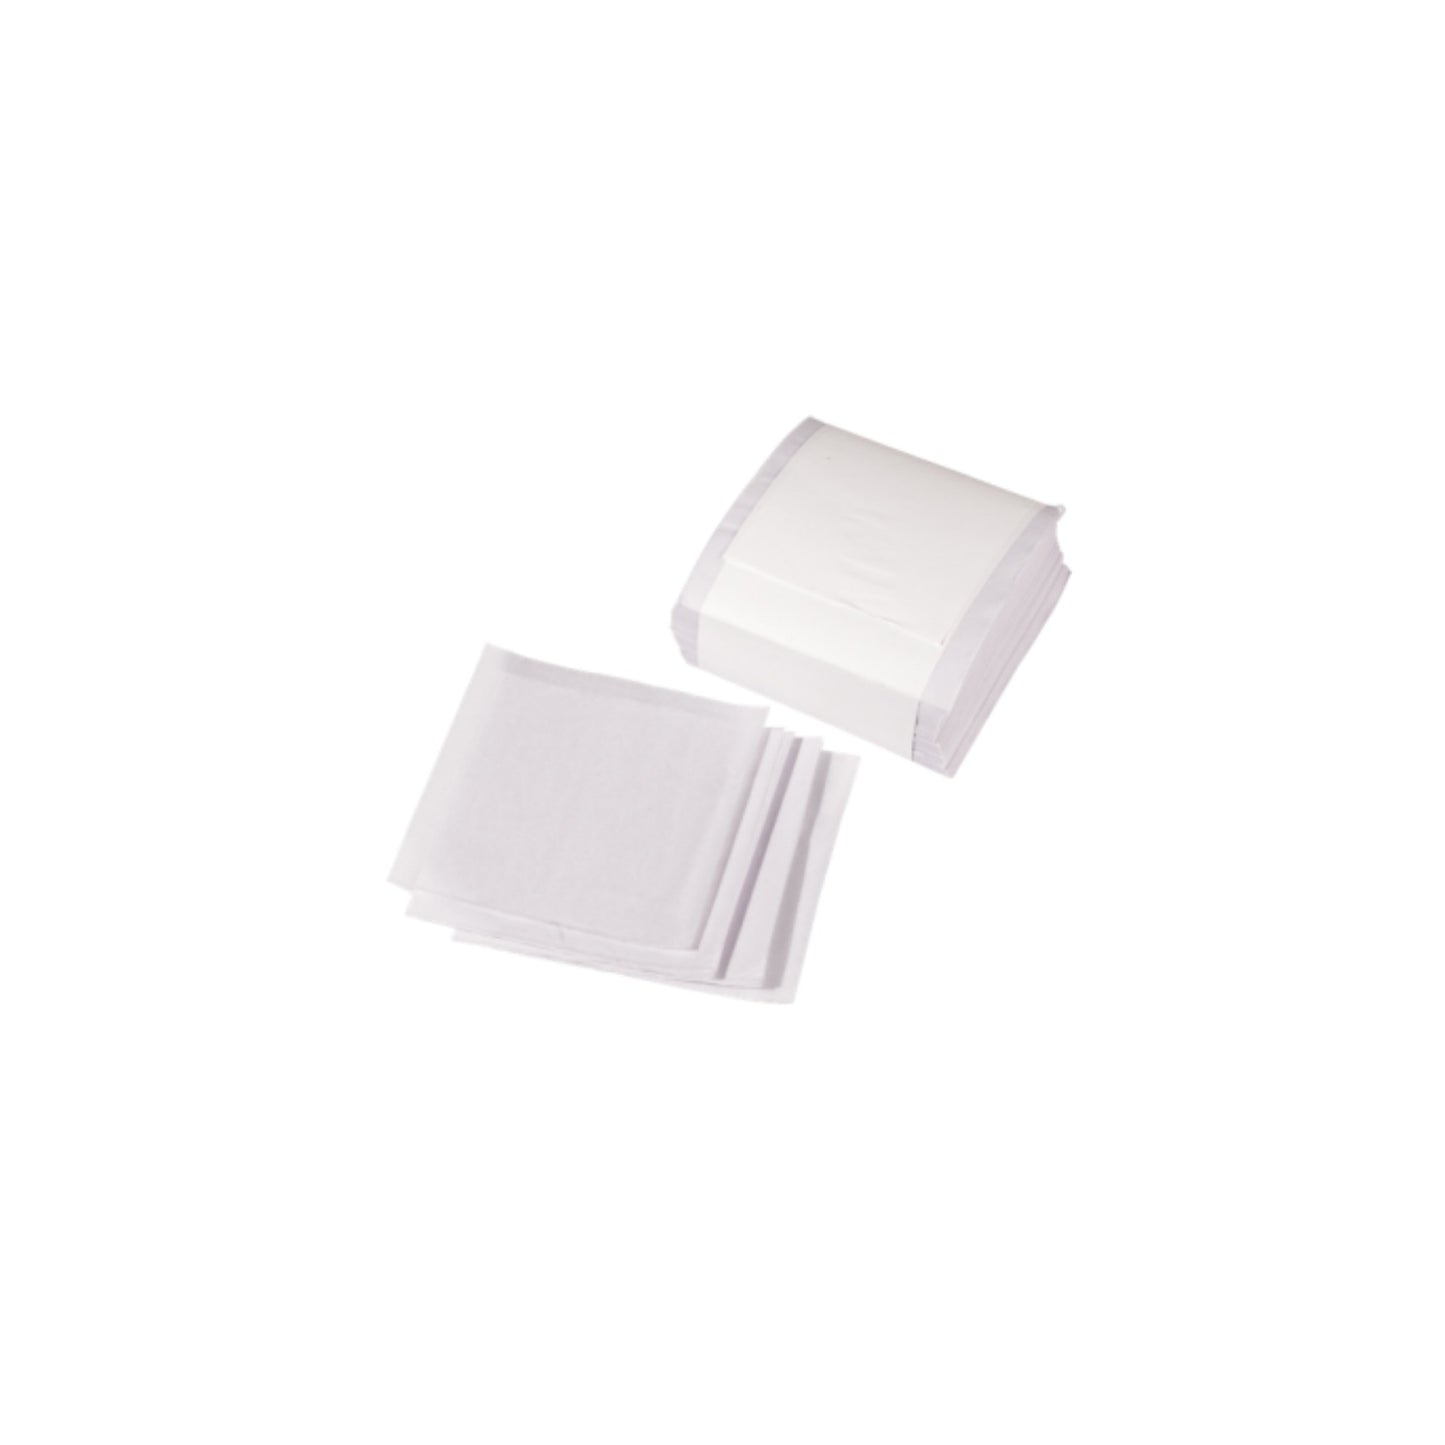 Anti-Tarnish Tissue Paper - Squares